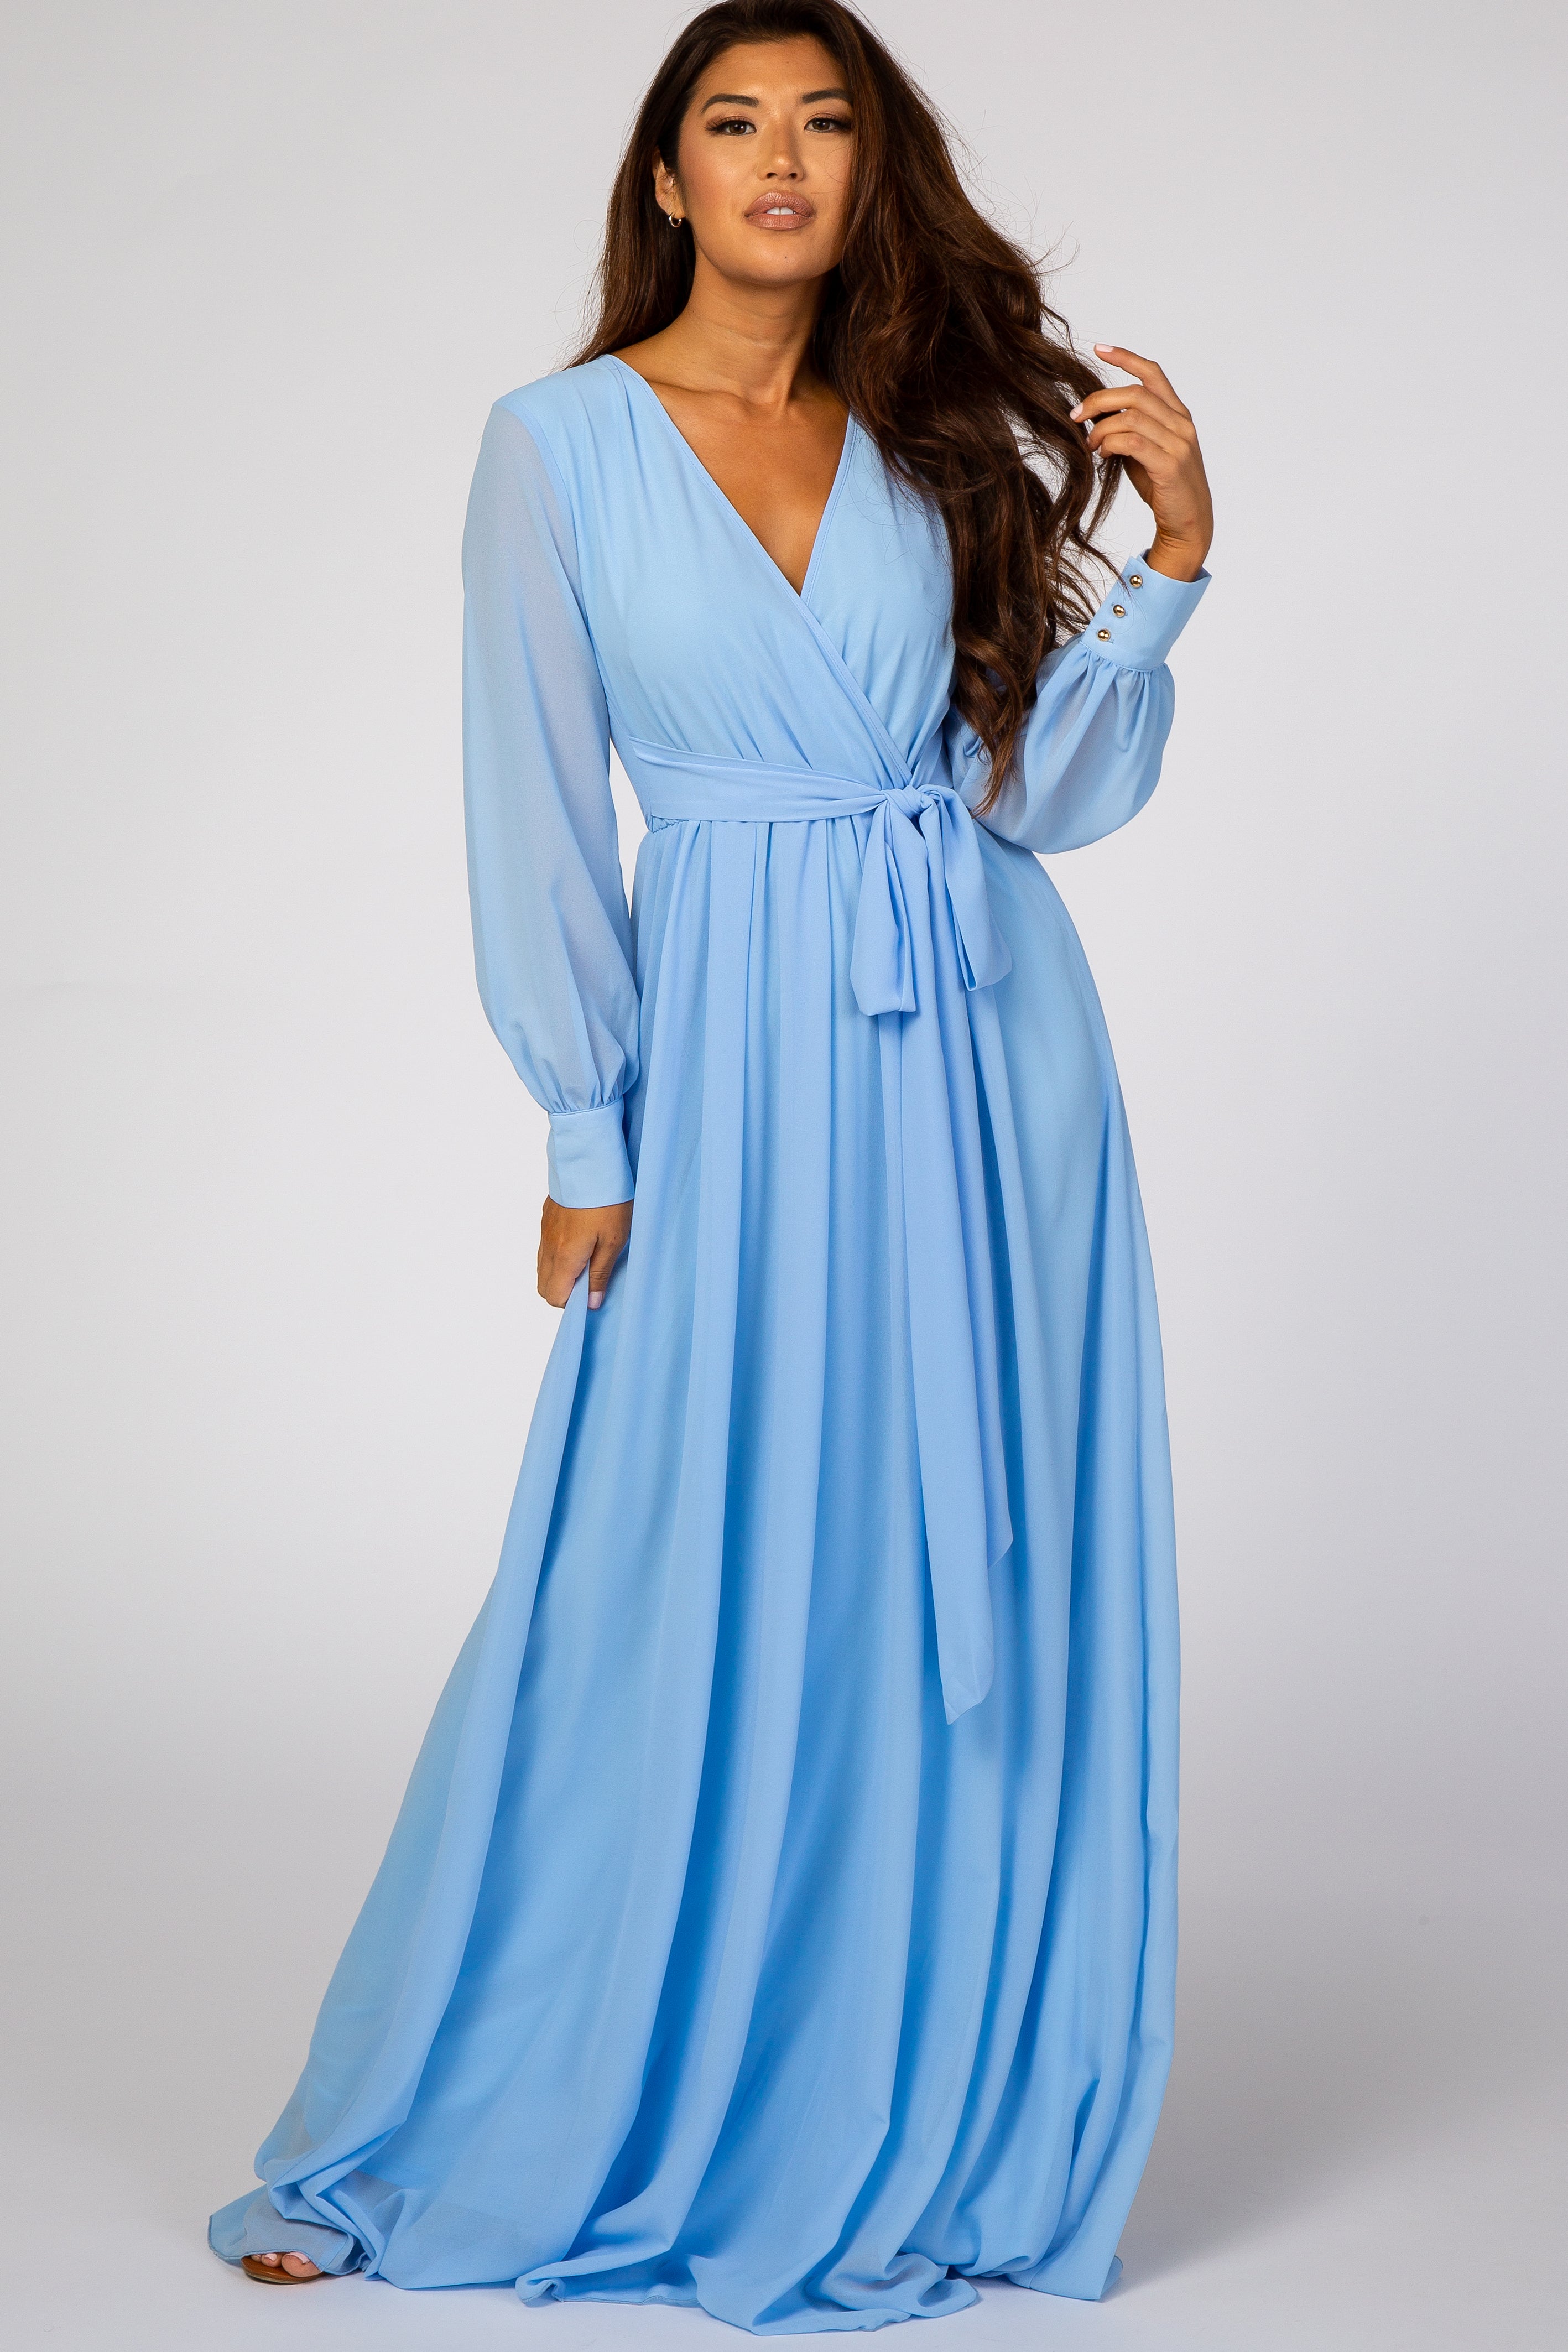 light blue long sleeve dress